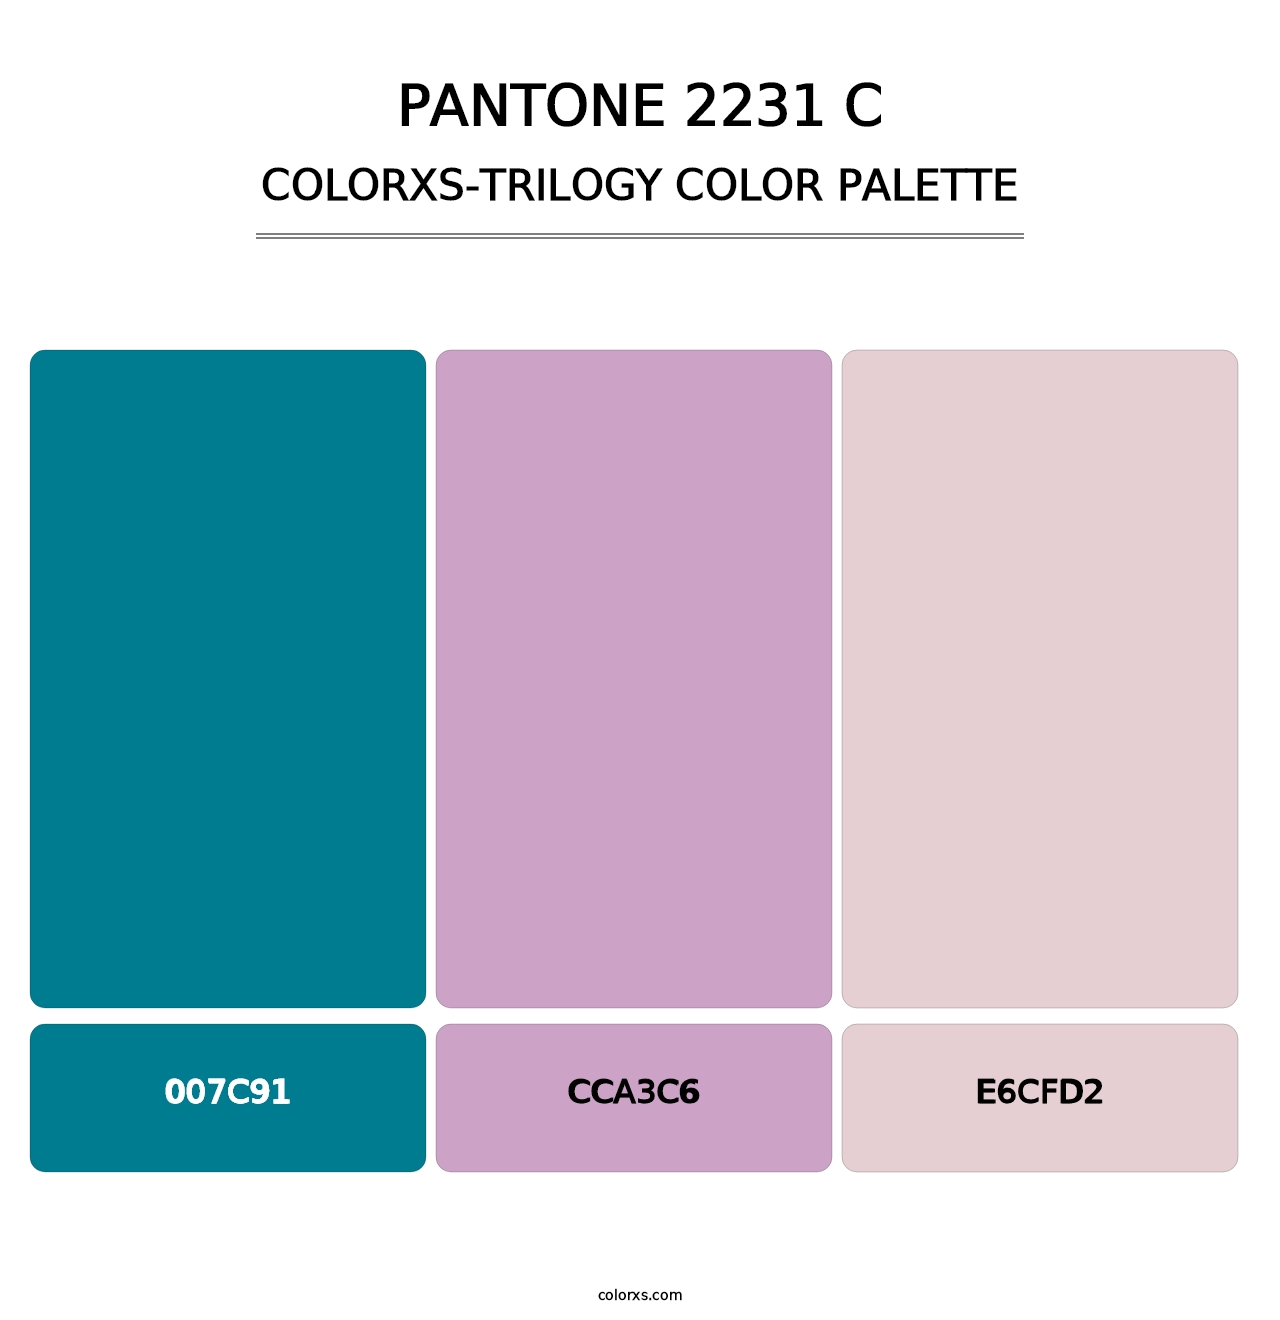 PANTONE 2231 C - Colorxs Trilogy Palette